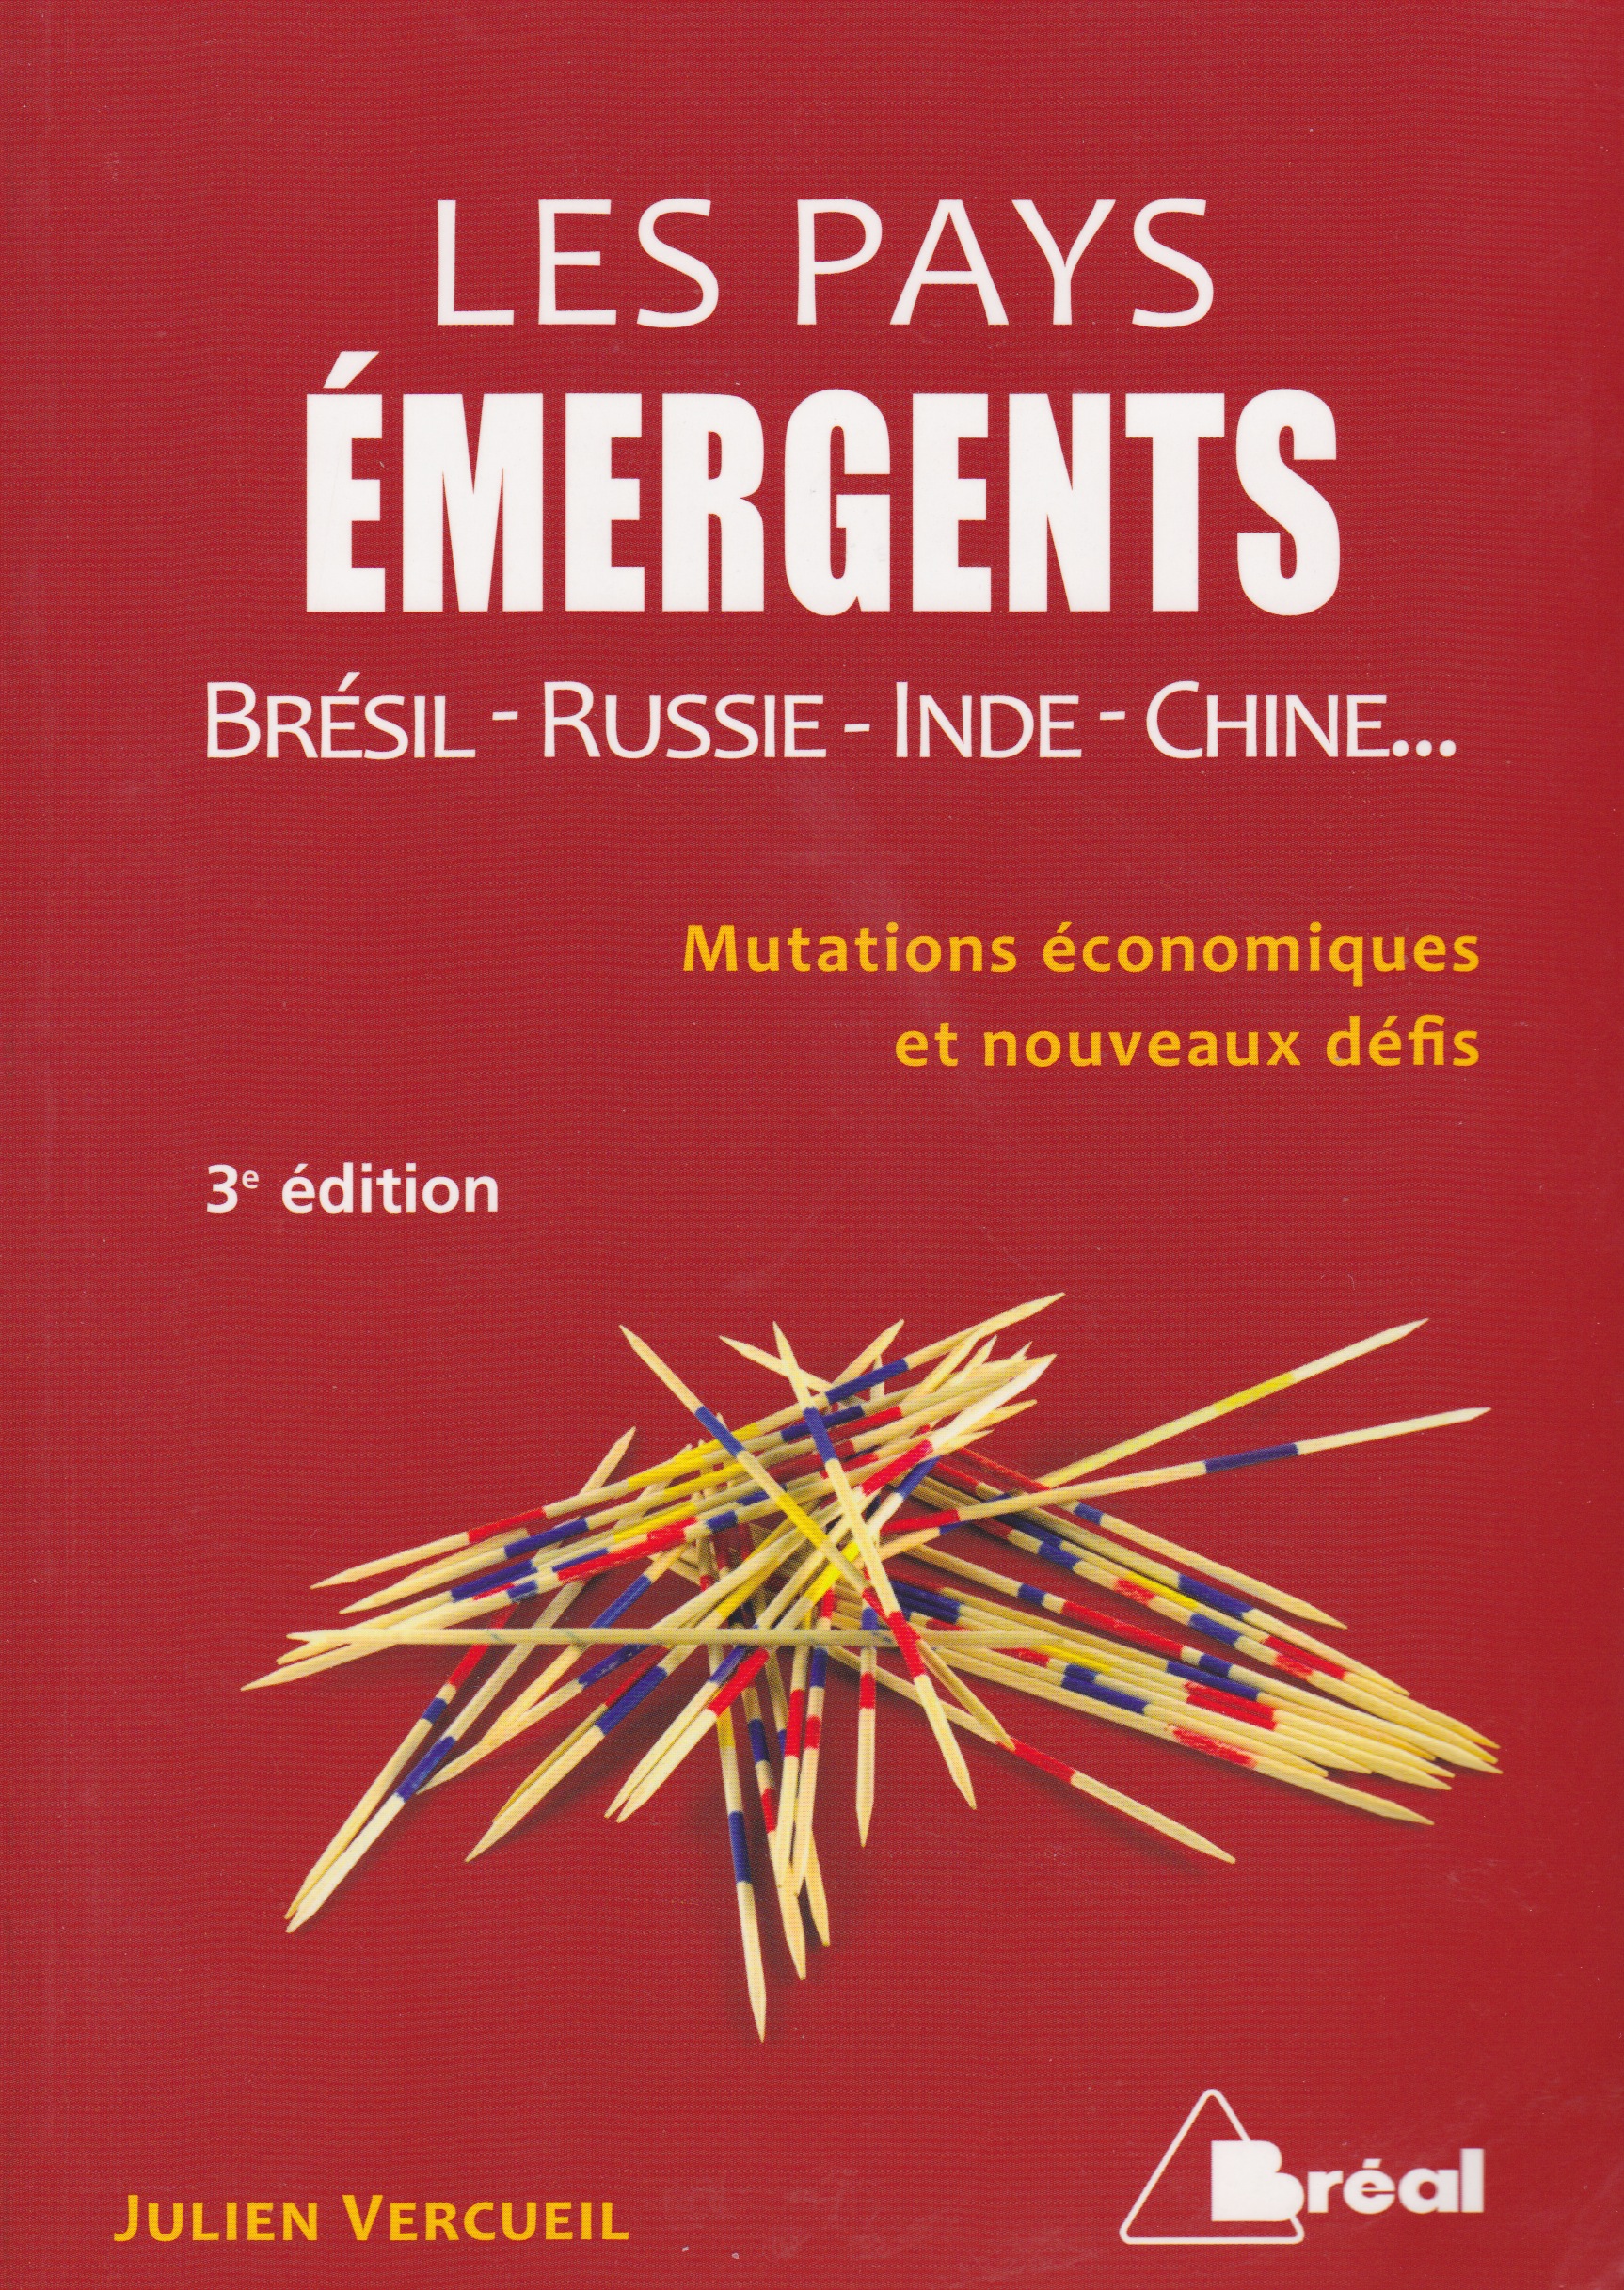 Julien VERCUEIL (2012): Les Pays Émergeants